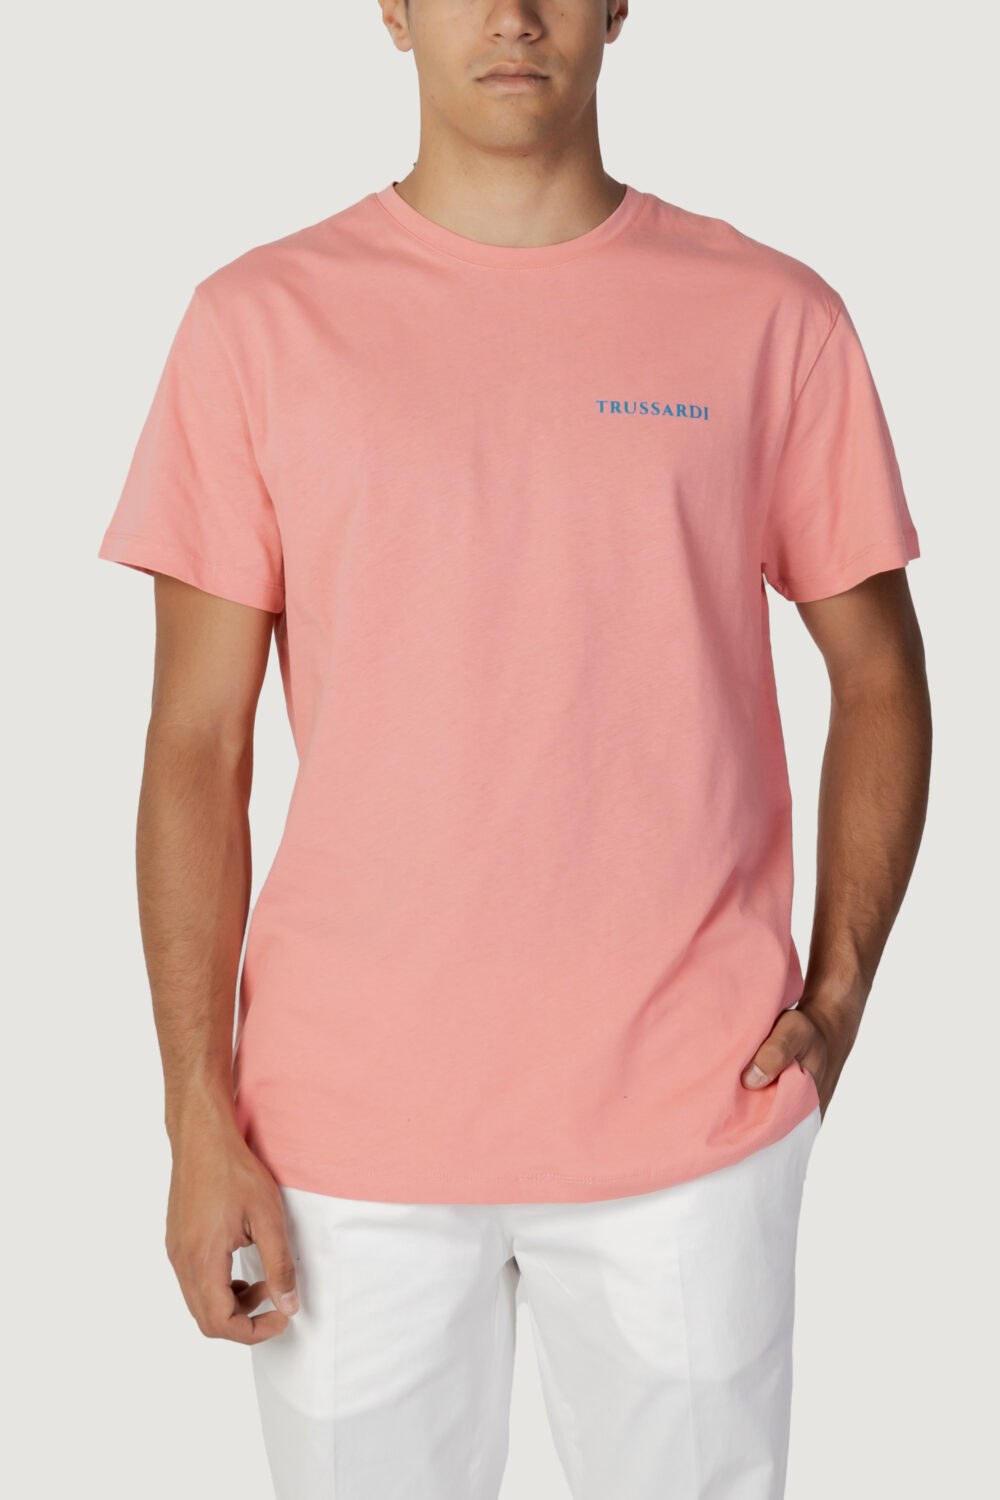 T-shirt Trussardi Beachwear logo Pesca - Foto 1